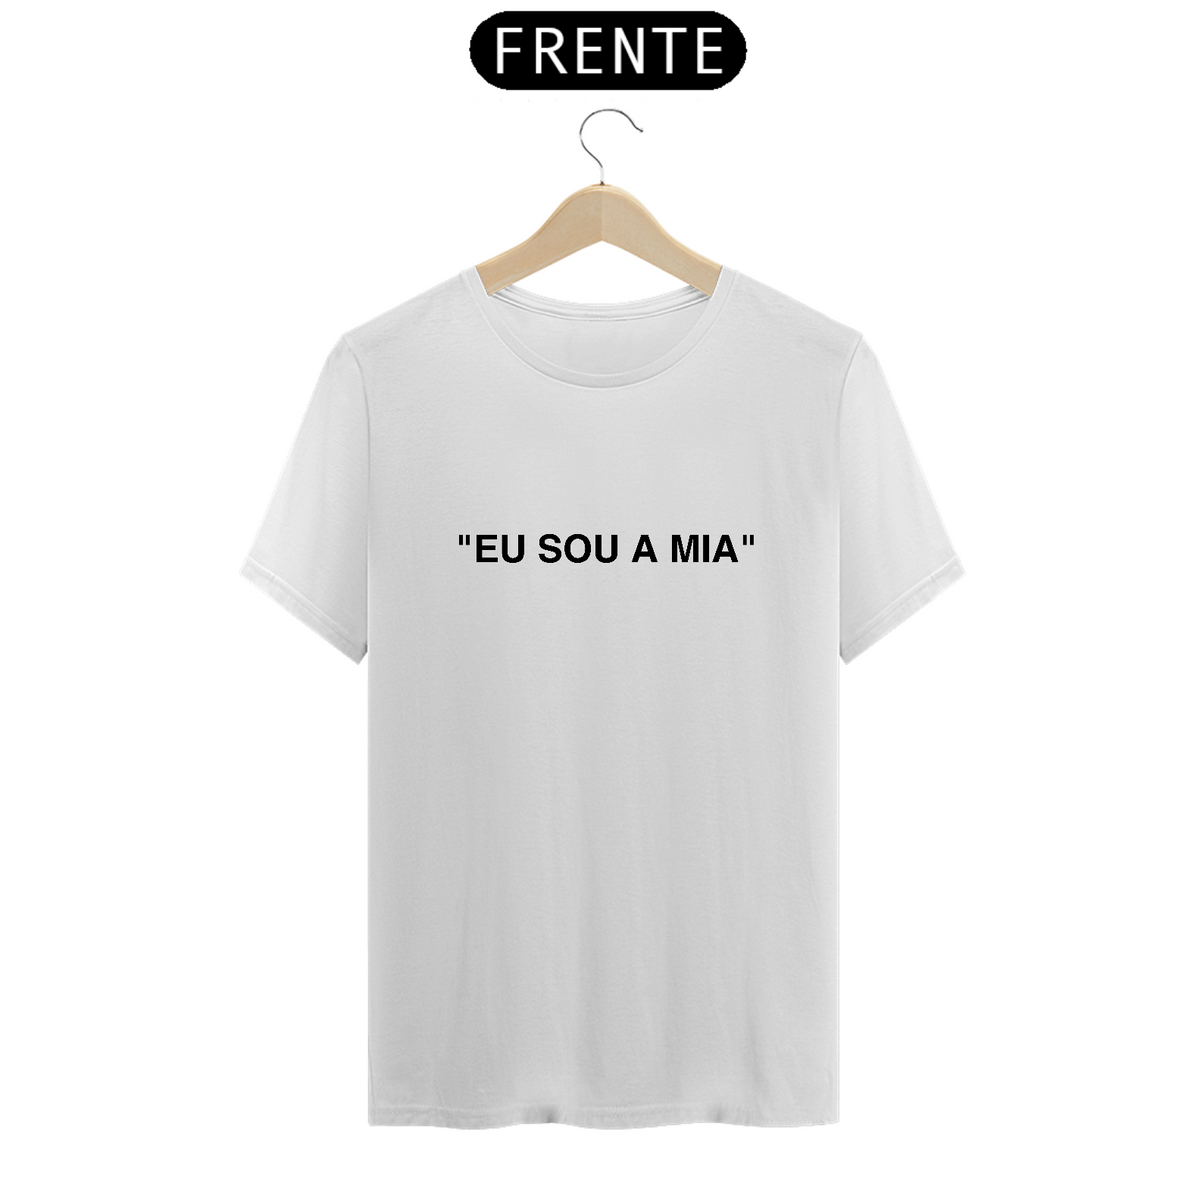 Nome do produto: Camiseta Unissex - RBD Eu sou a Mia Insp. Off White 